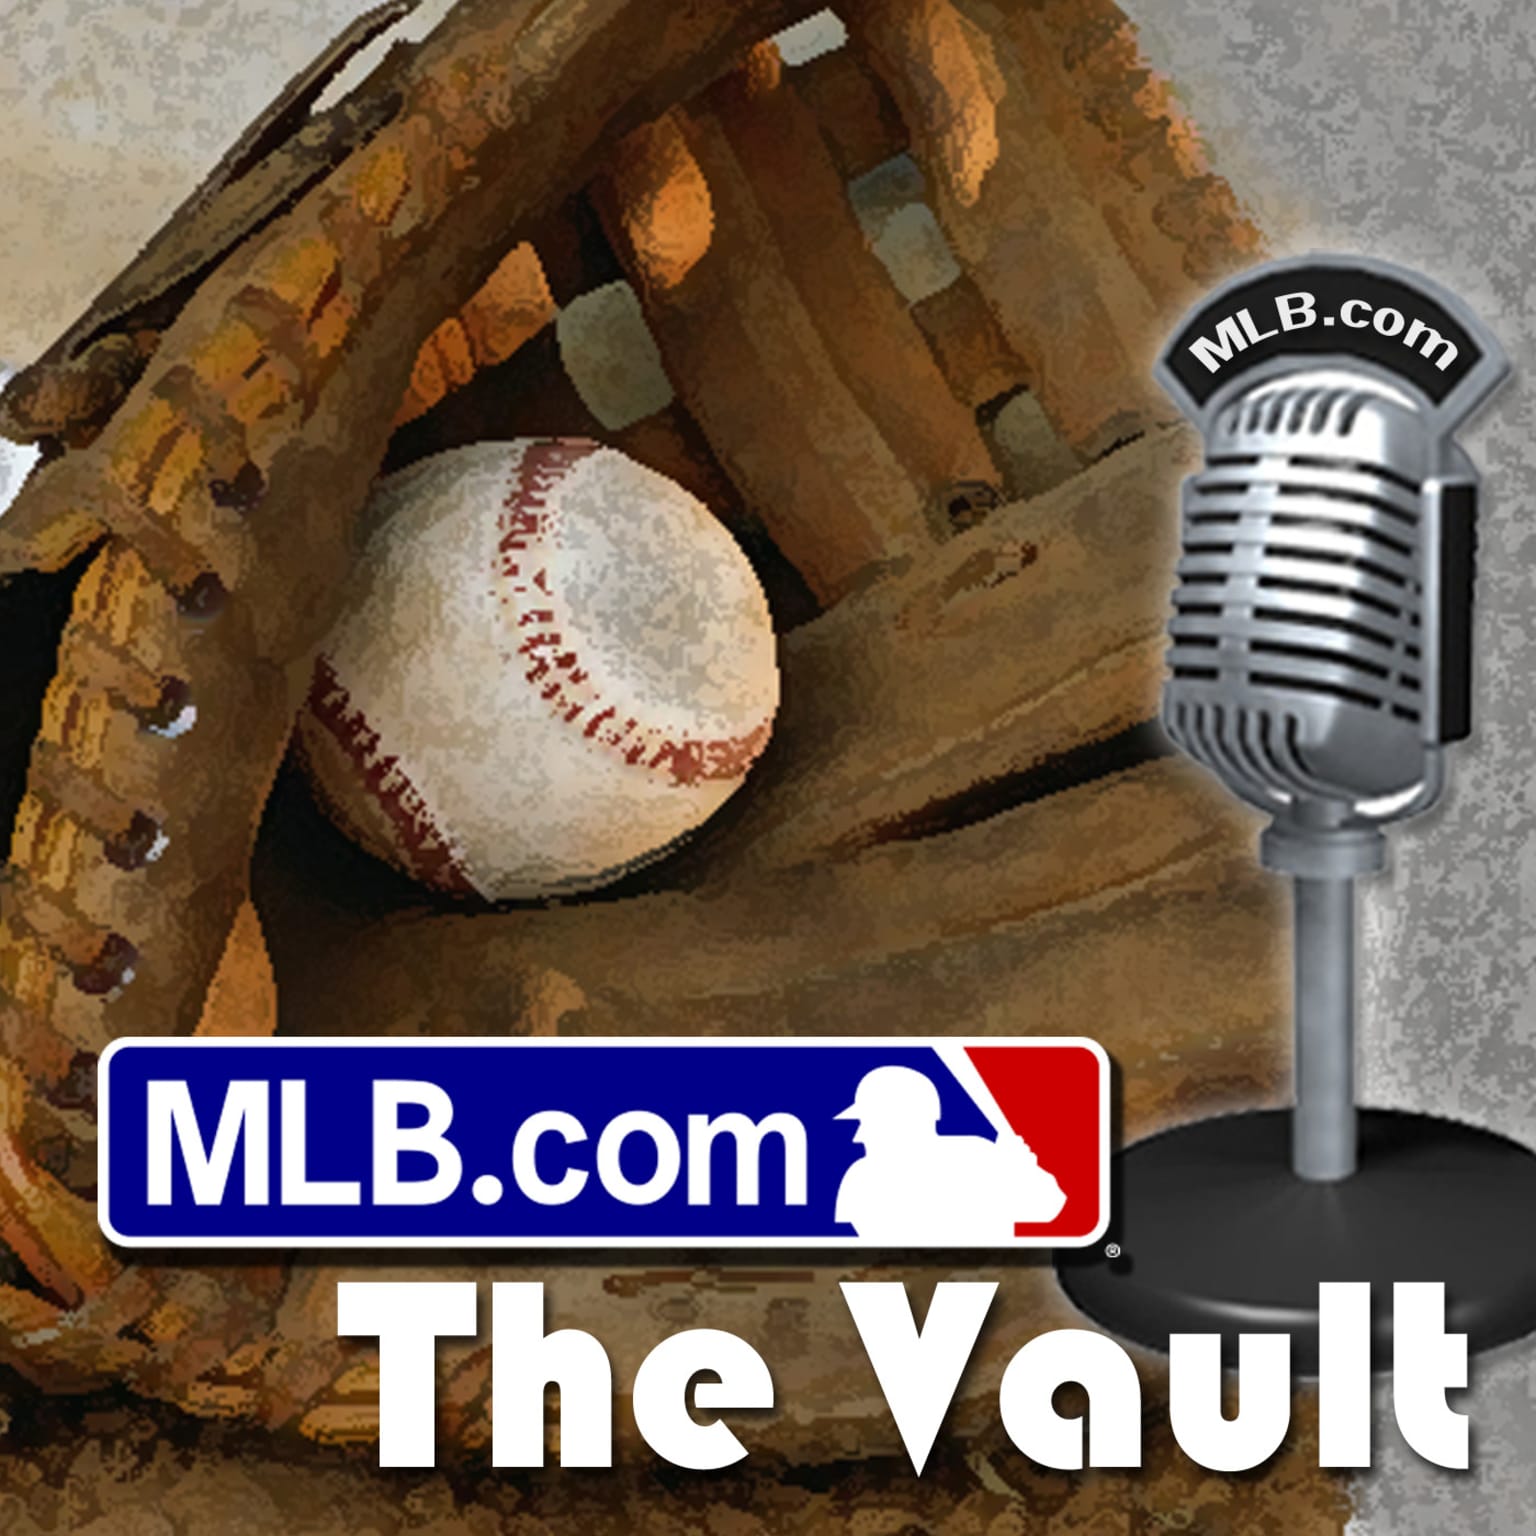 MLB Podcasts Fans MLB